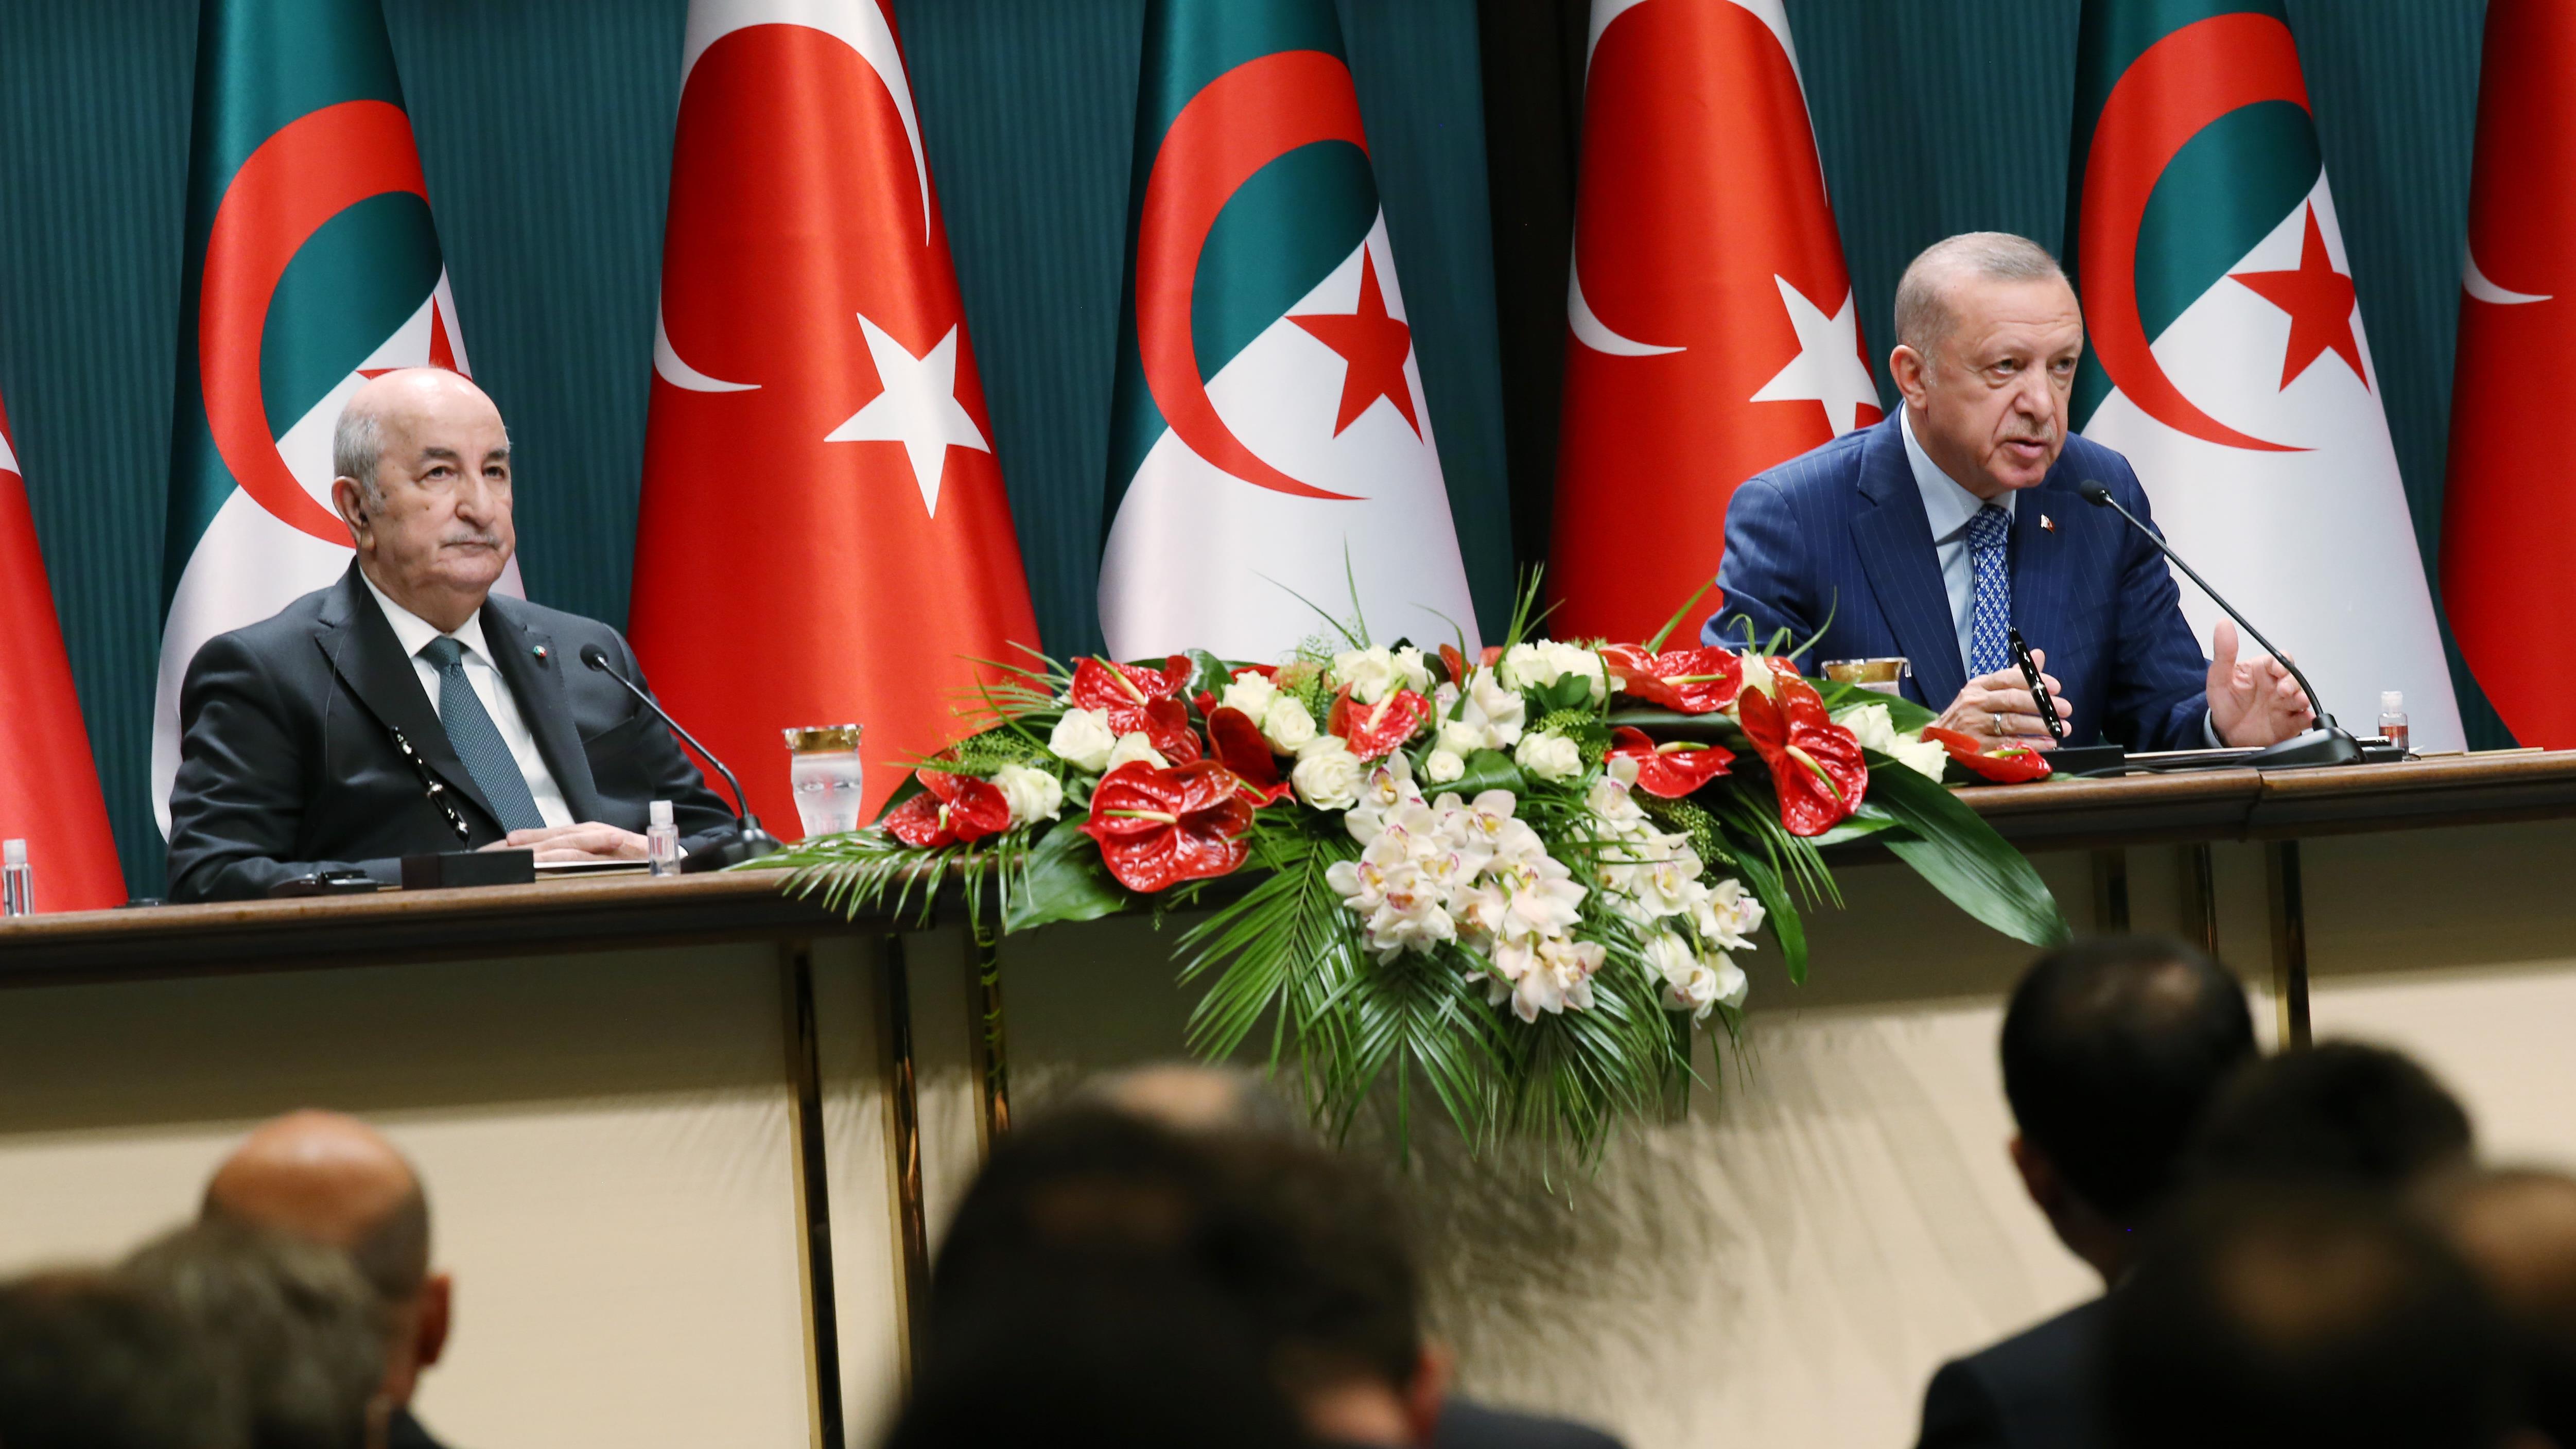 Cumhurbaşkanı Erdoğan ile Cezayir Cumhurbaşkanı Tebbun, anlaşmaların imza törenine iştirak etti